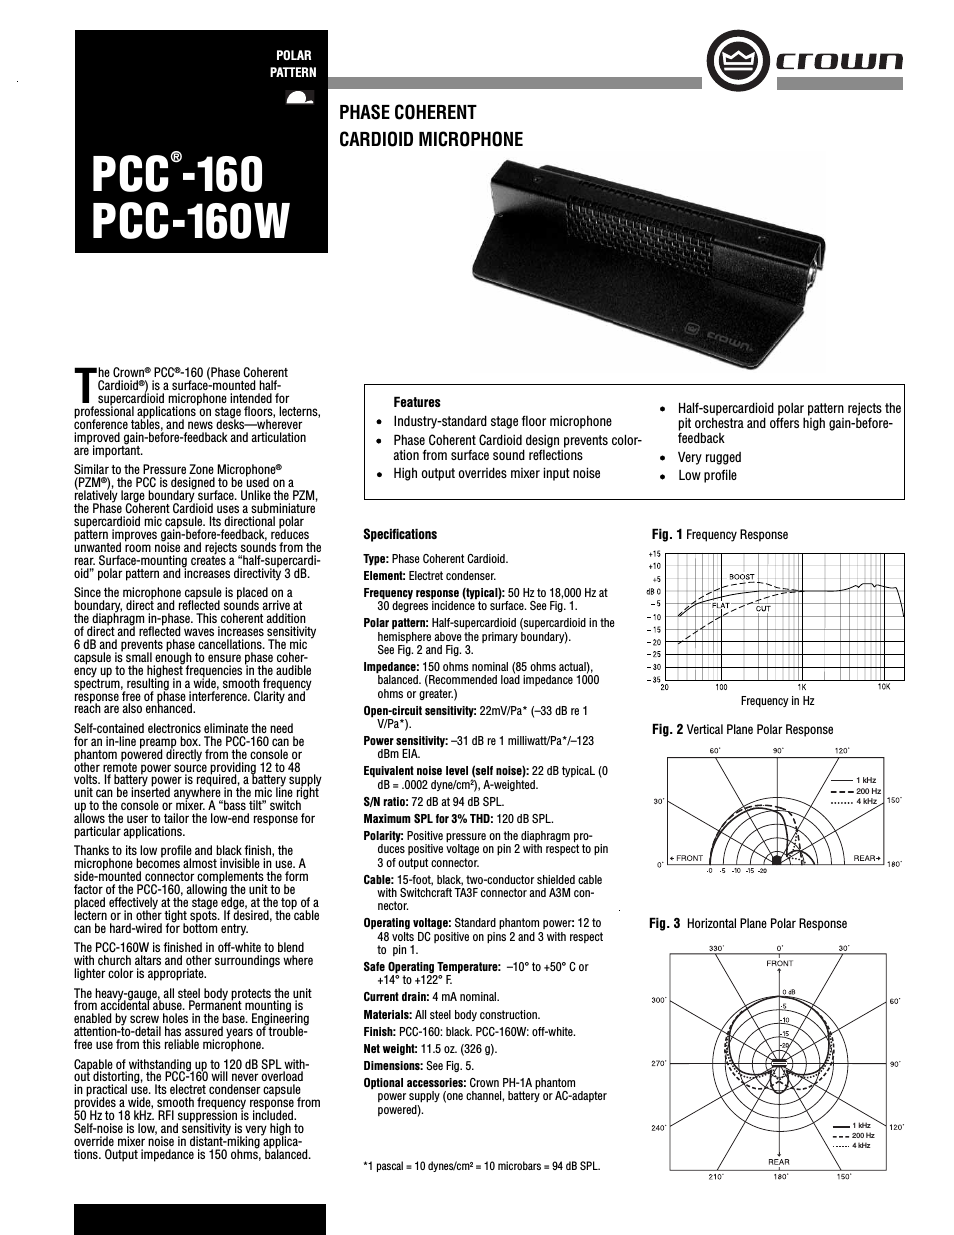 PCC-160W